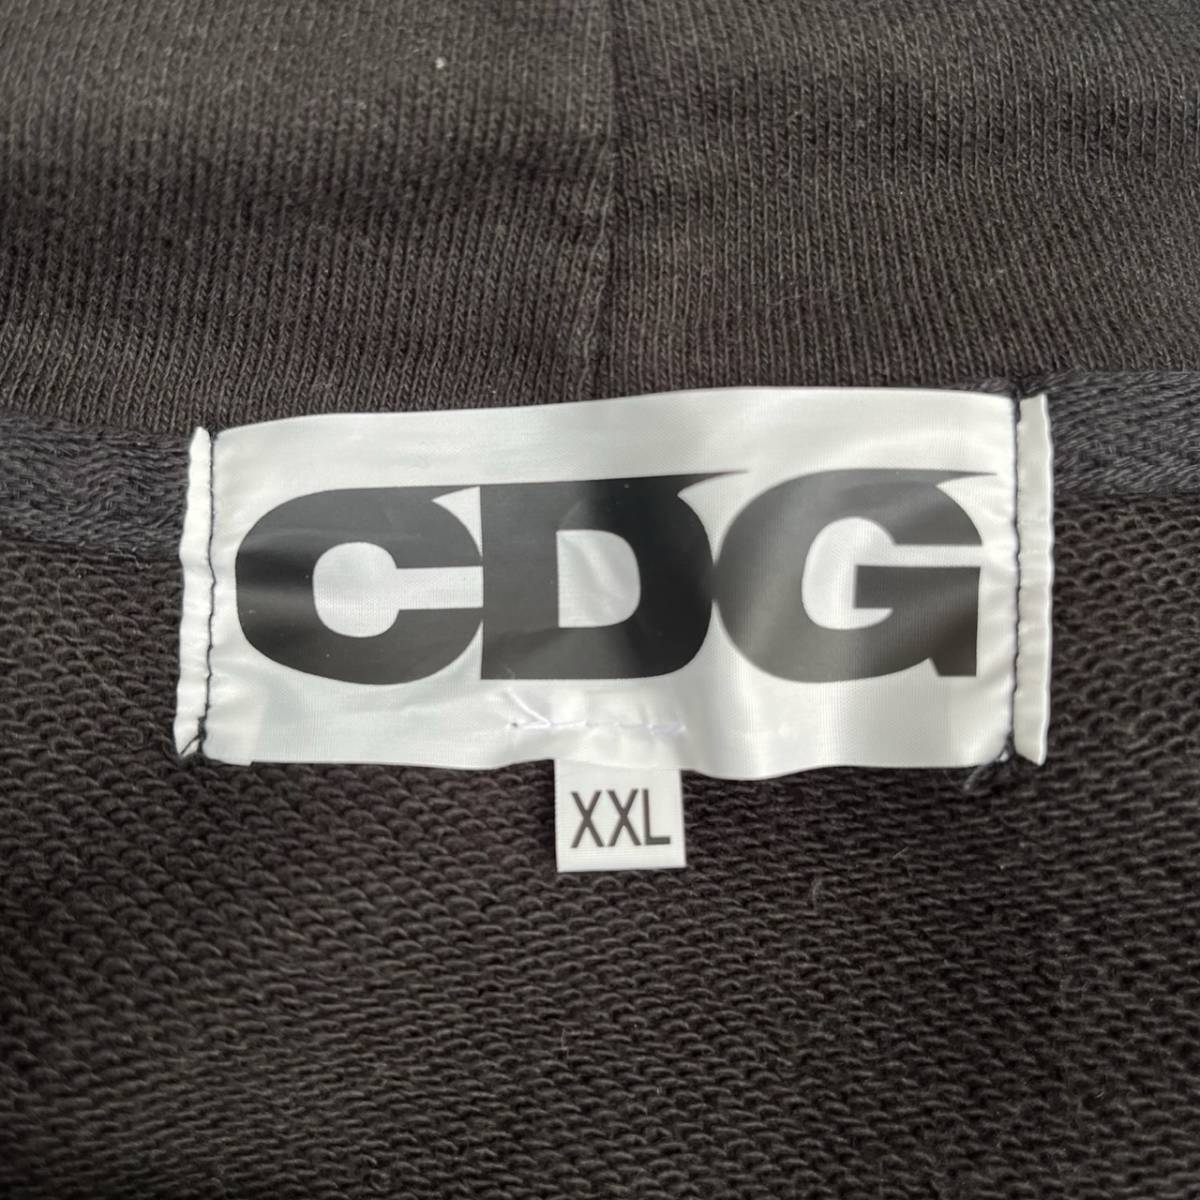 CDG シーディージー XXLサイズ ロゴ パーカー フーディ